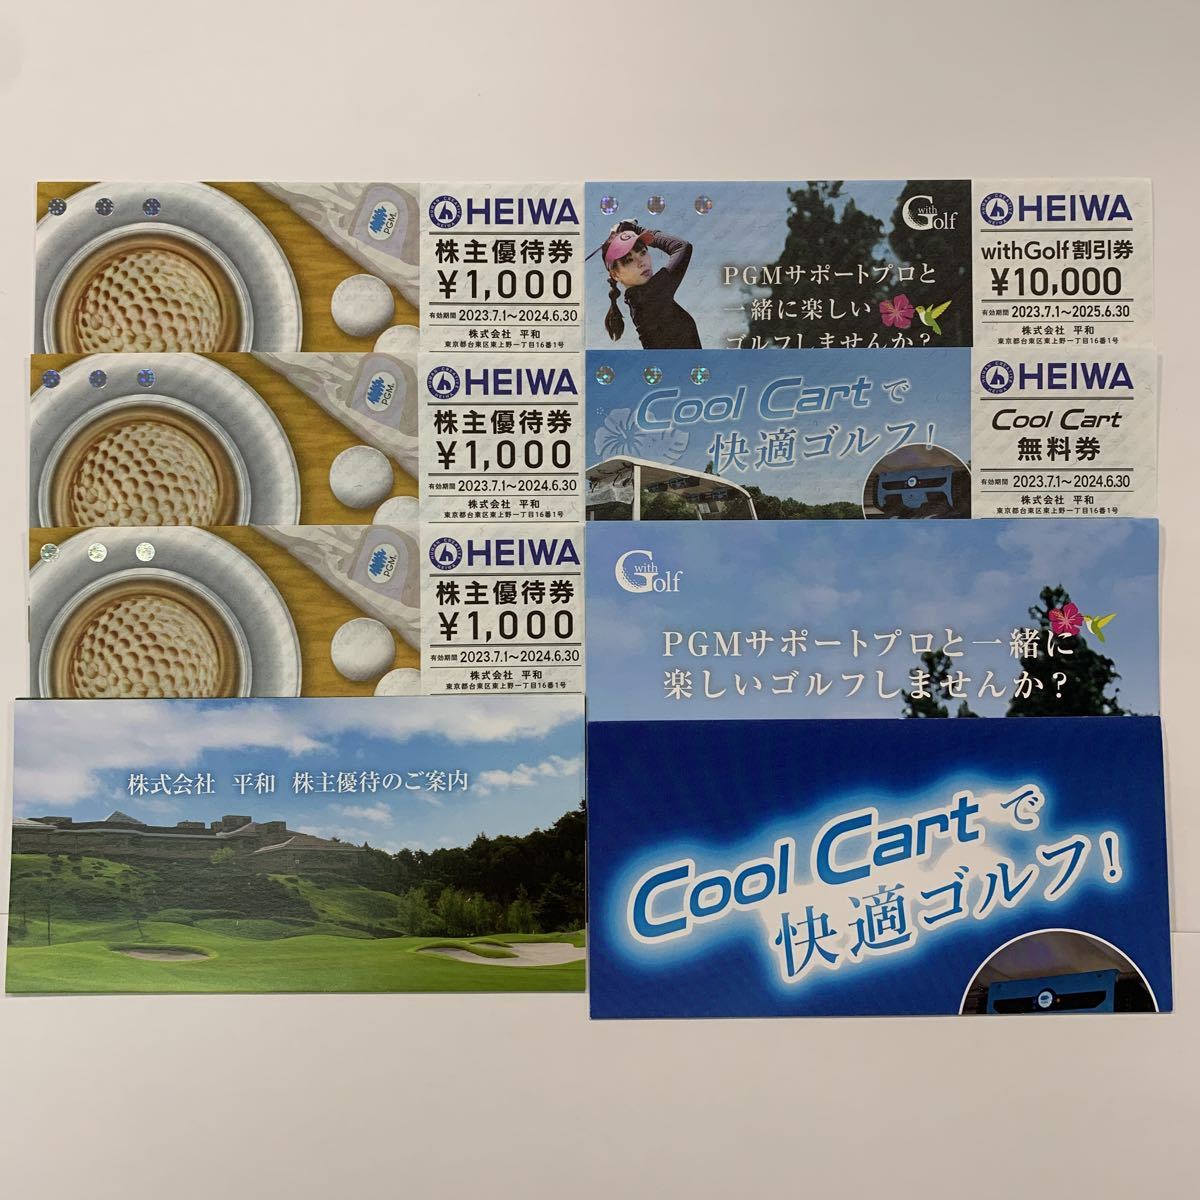 PGM 平和 withGolf割引券・Cool Cart無料券 - ゴルフ